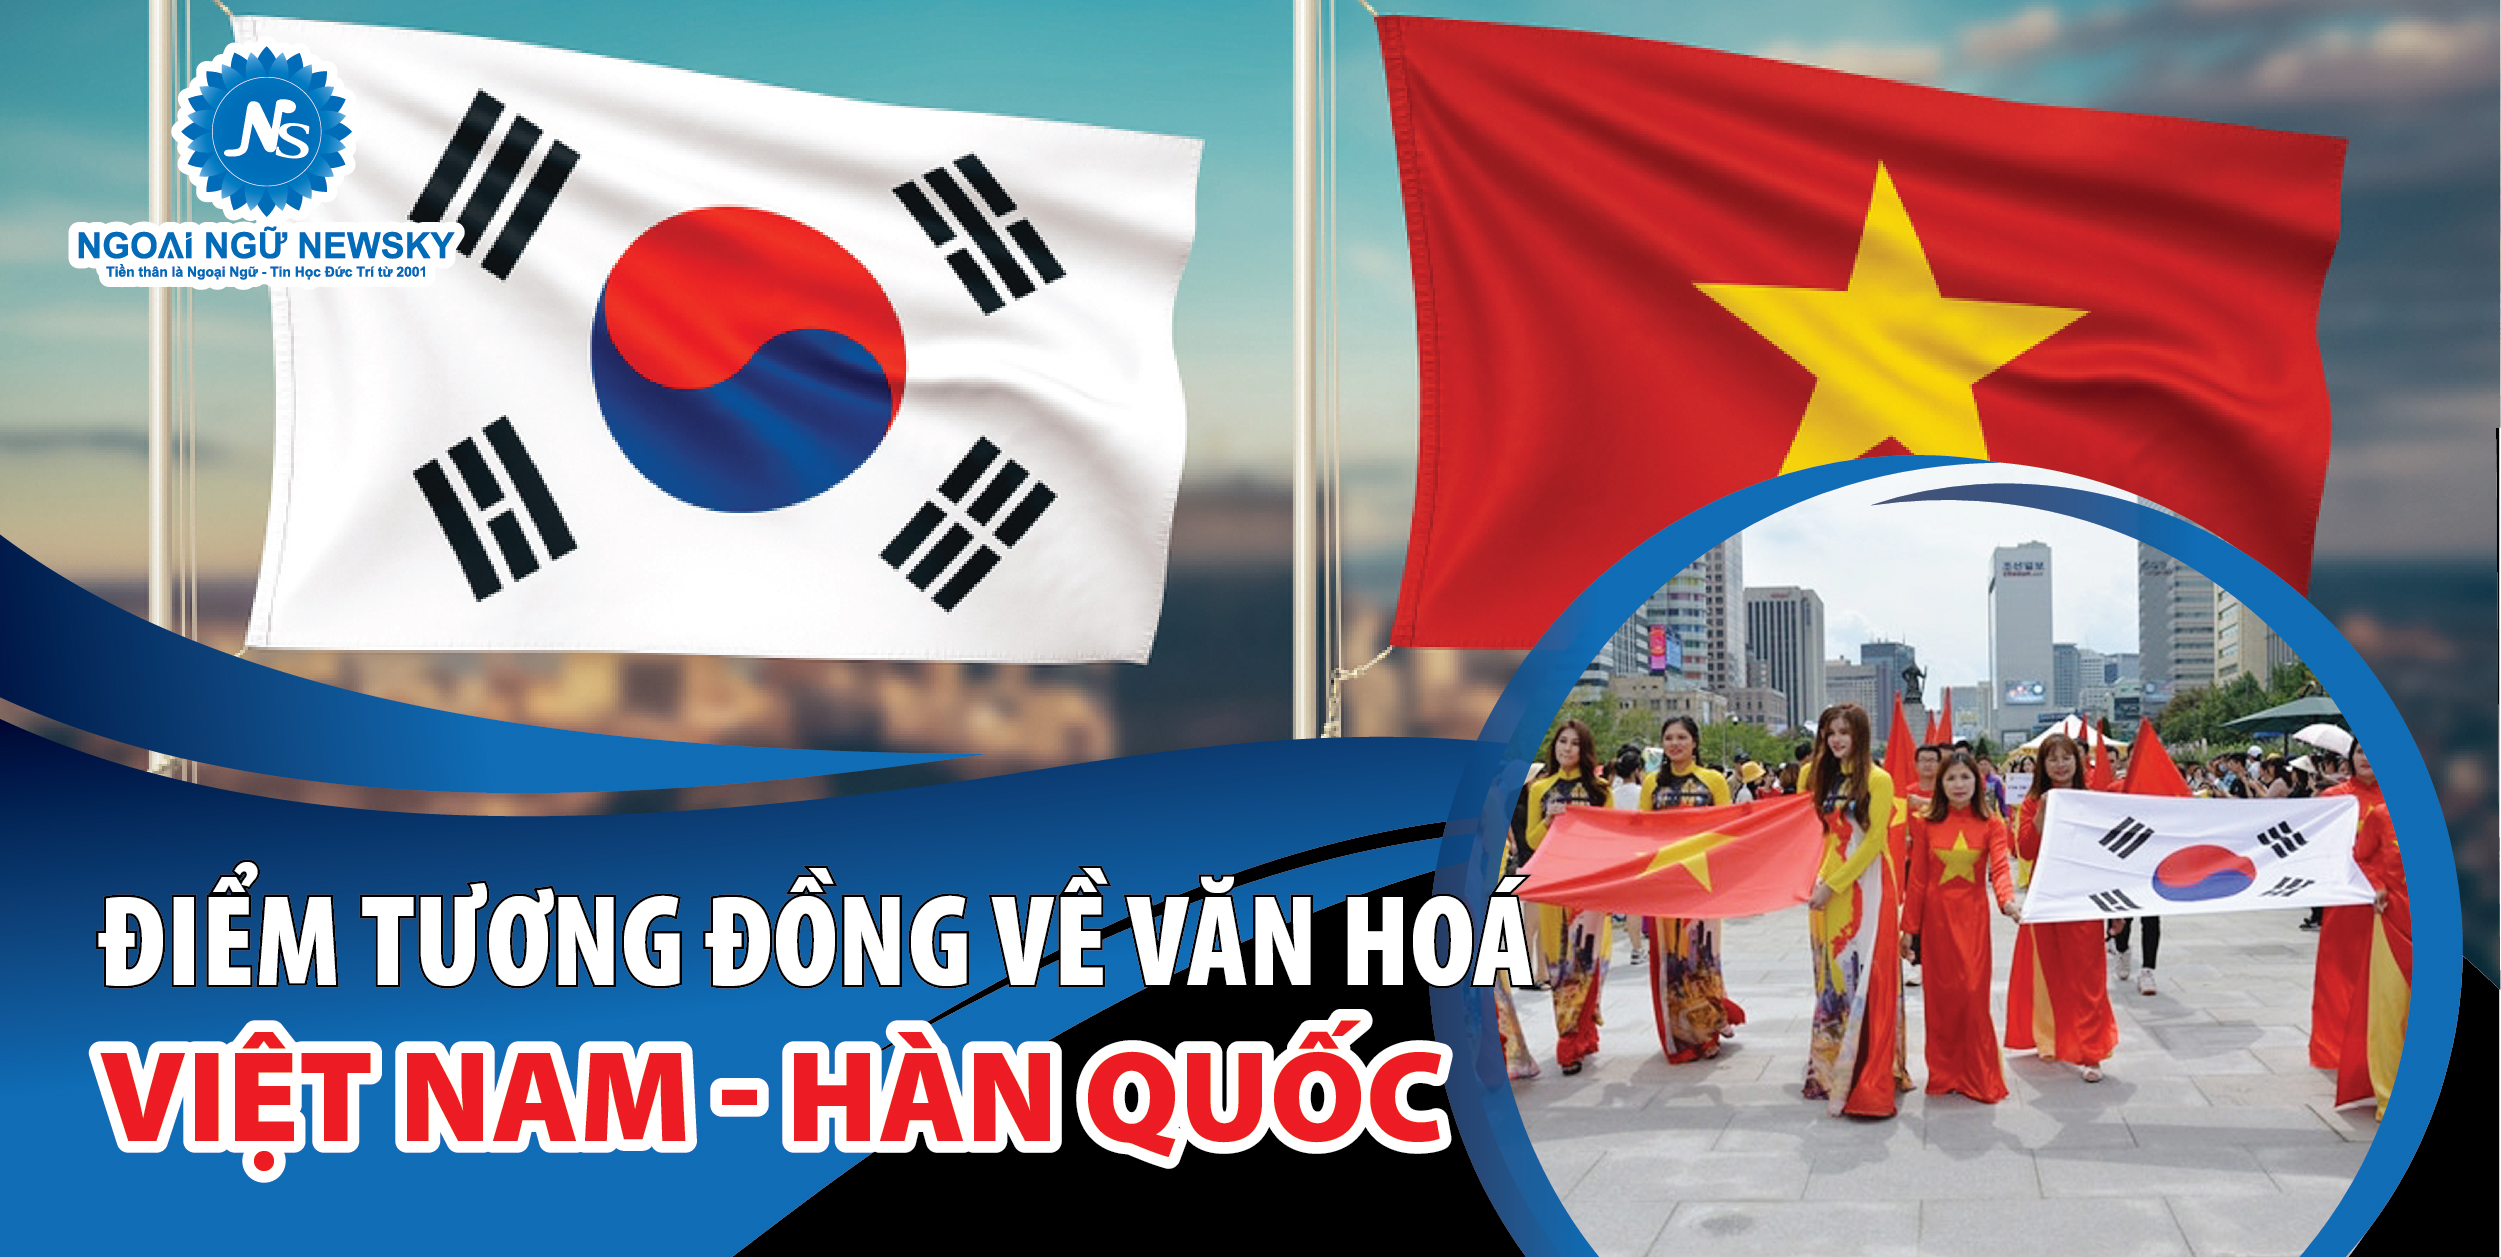 Top 99 hình ảnh lá cờ Hàn Quốc và Việt Nam đẹp nhất hiện nay